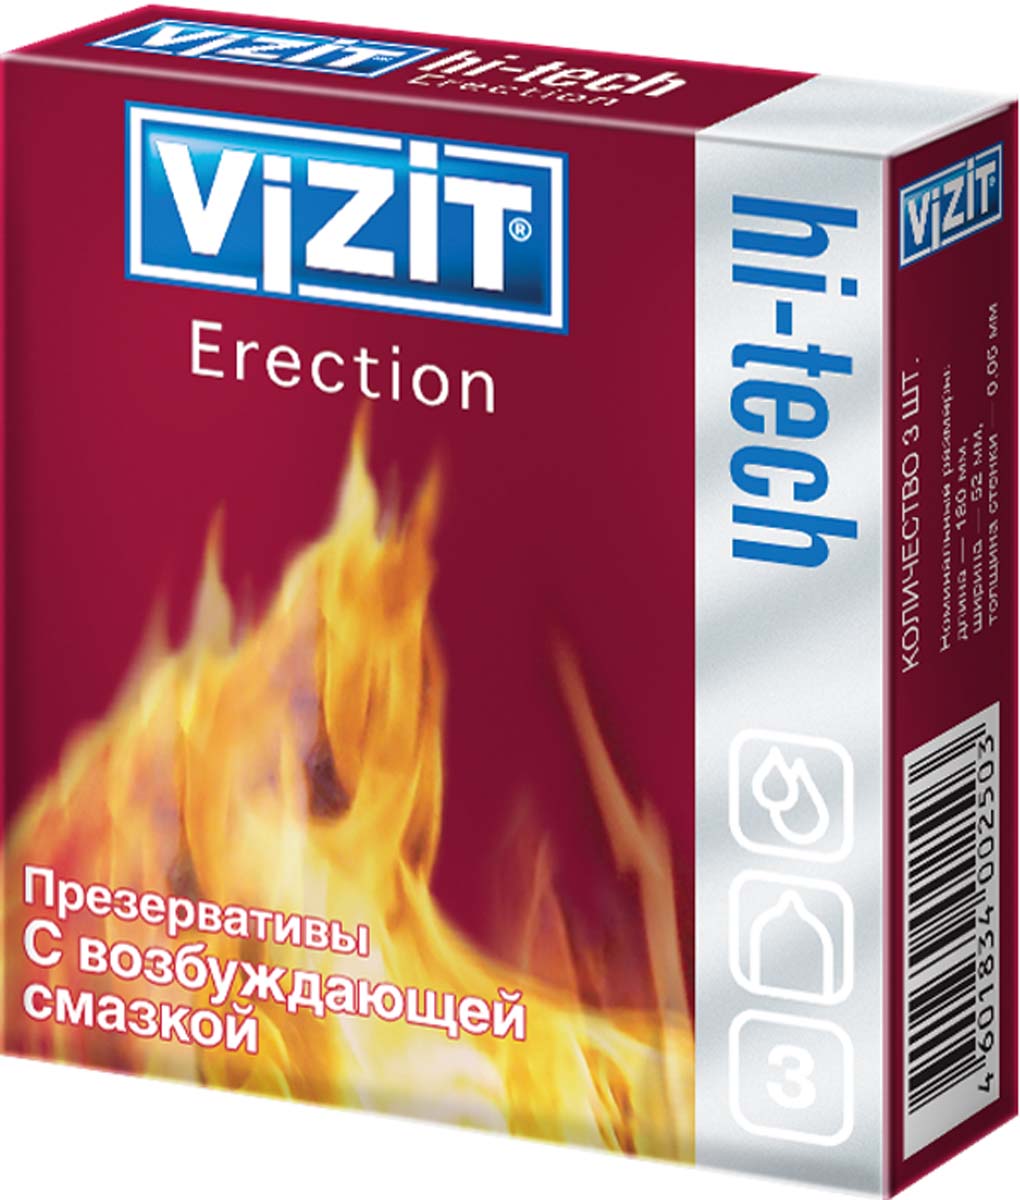 VIZIT Презервативы HI-TECH Erection, с возбуждающей смазкой, 3 шт